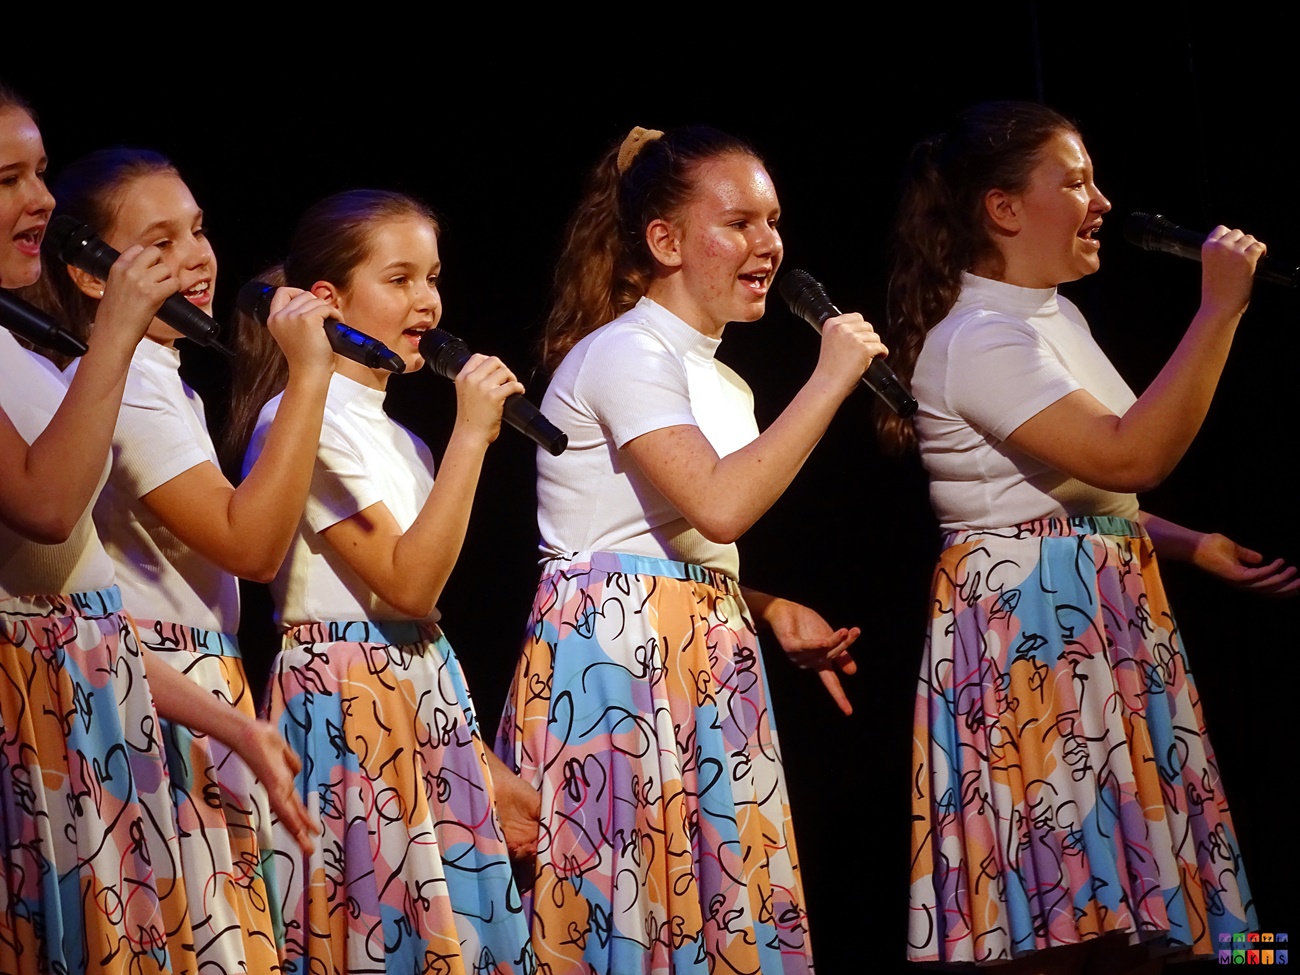 Zdjęcie przedstawia śpiewające do mikrofonów dziewczyny. Mają one białą koszulkę oraz kolorowe sukienki.